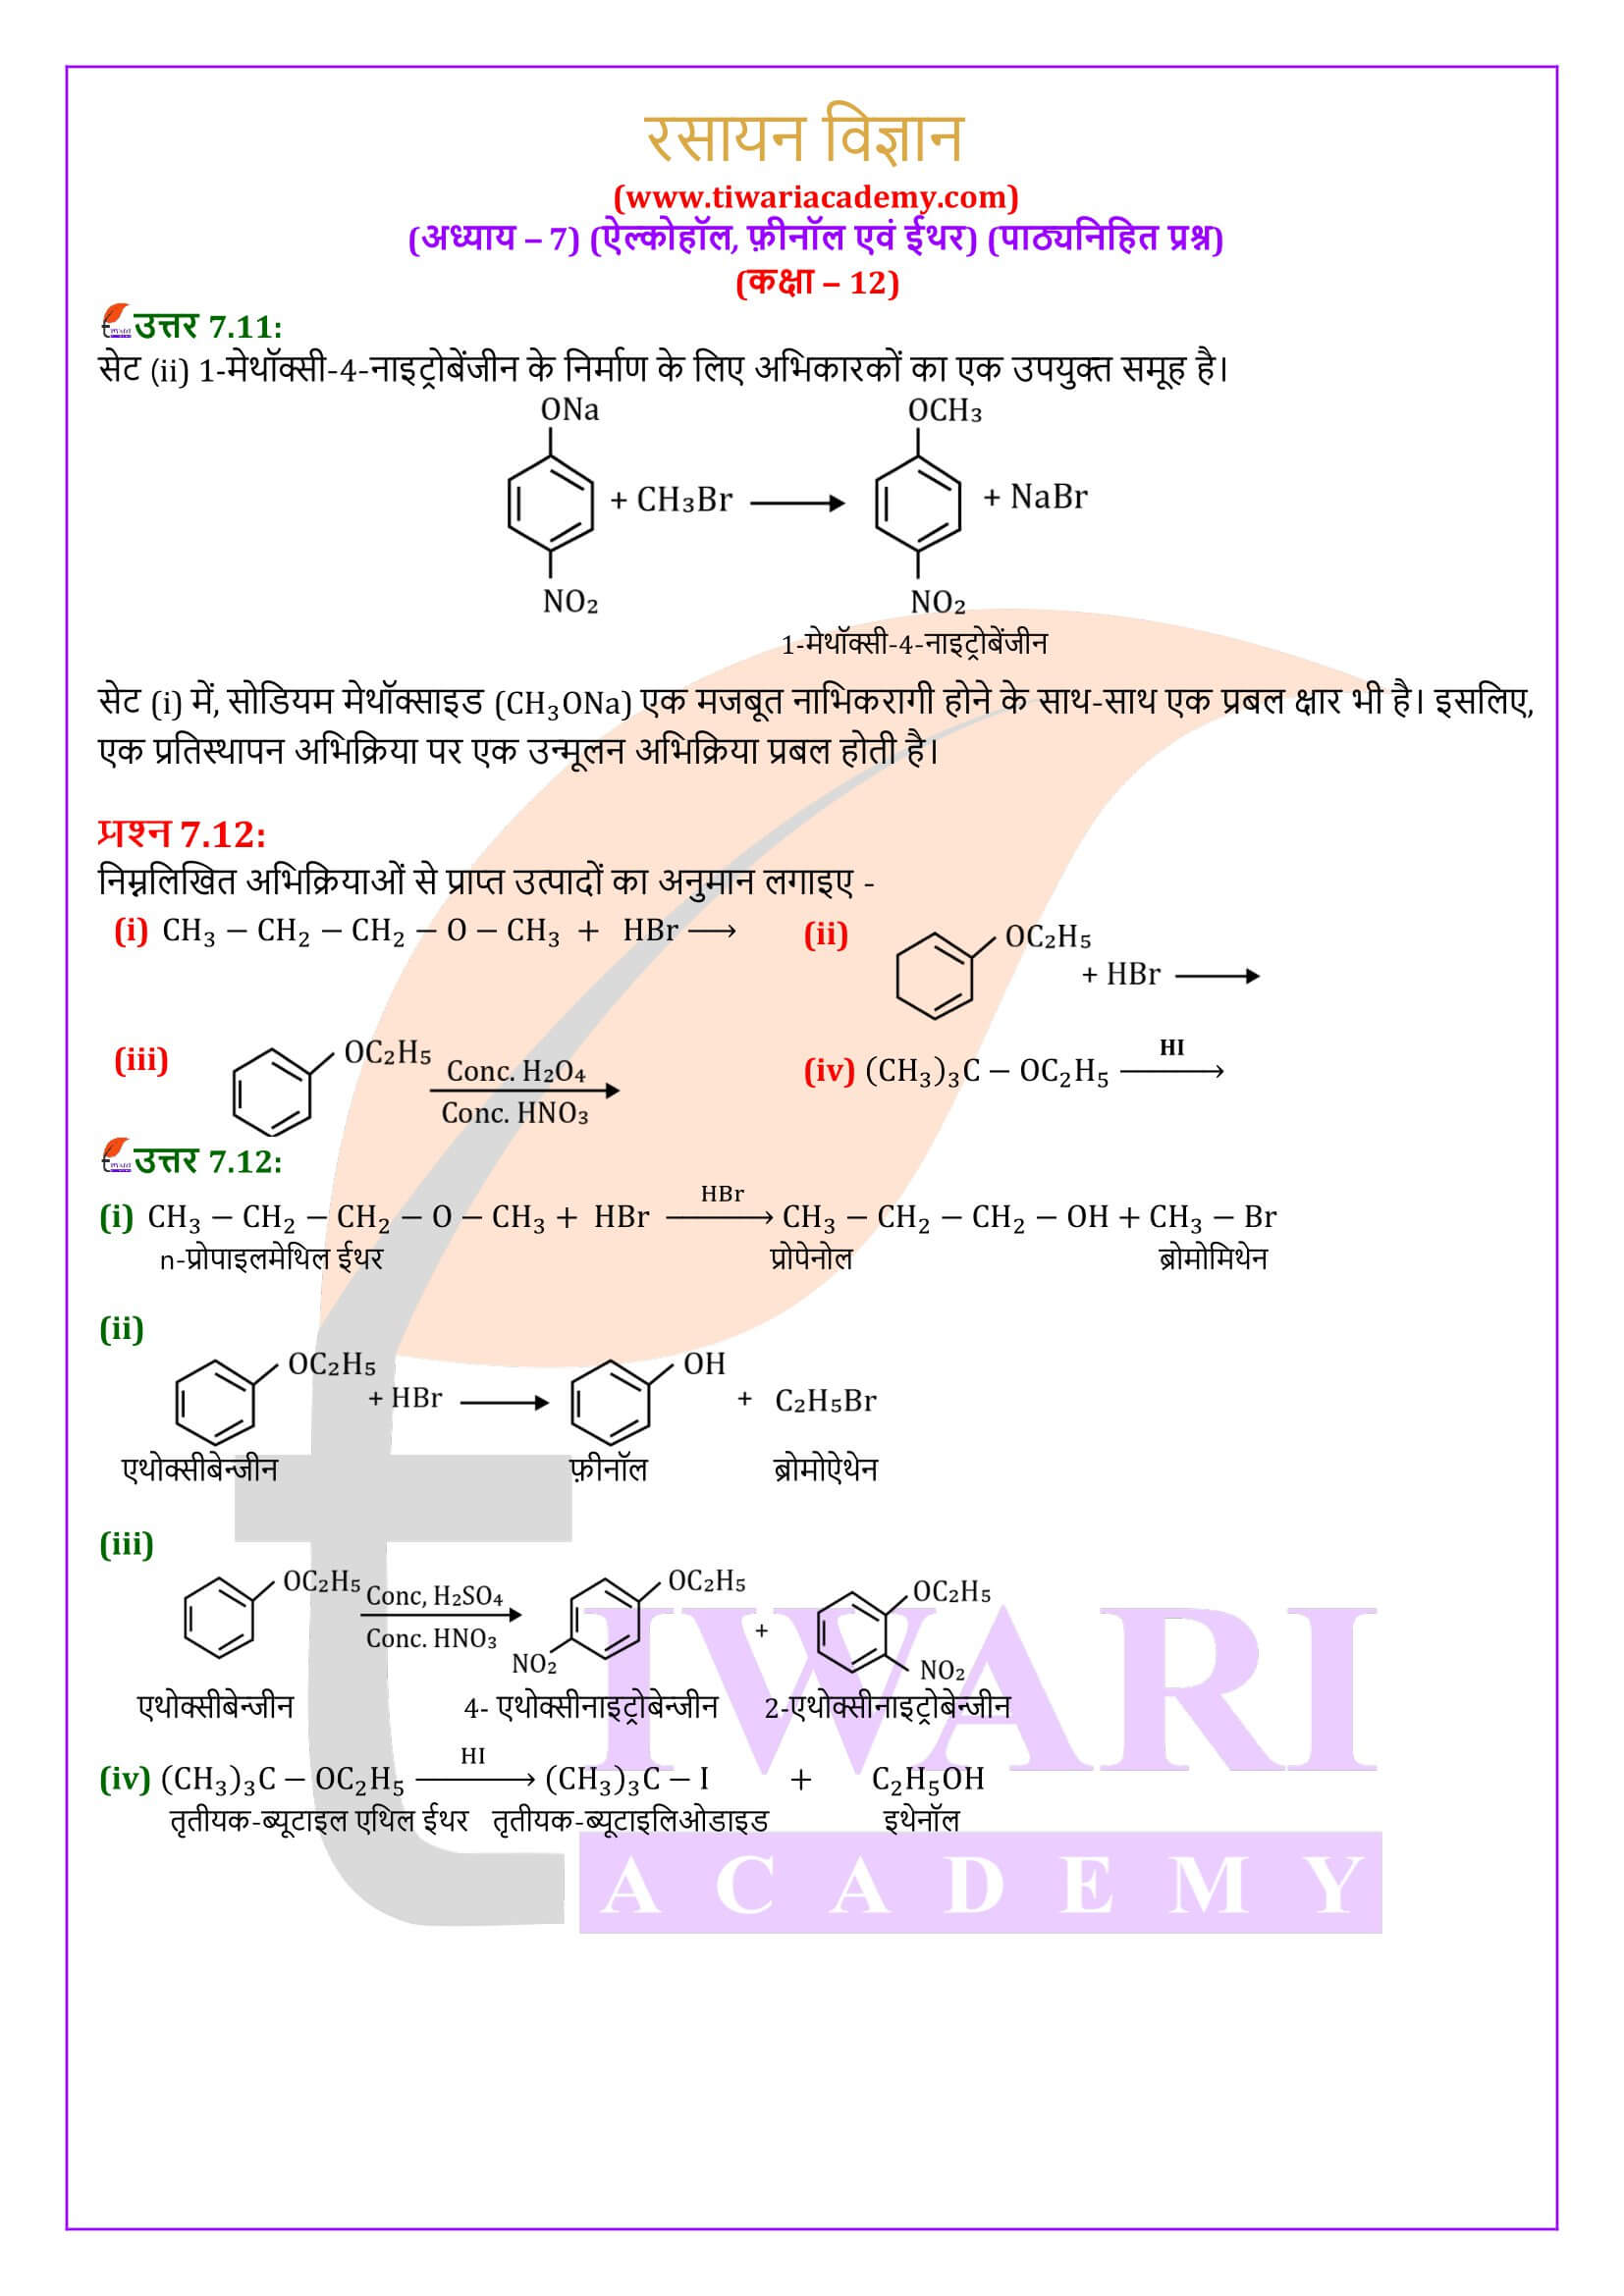 कक्षा 12 रसायन विज्ञान अध्याय 7 पाठ्यनिहित के हल हिंदी में